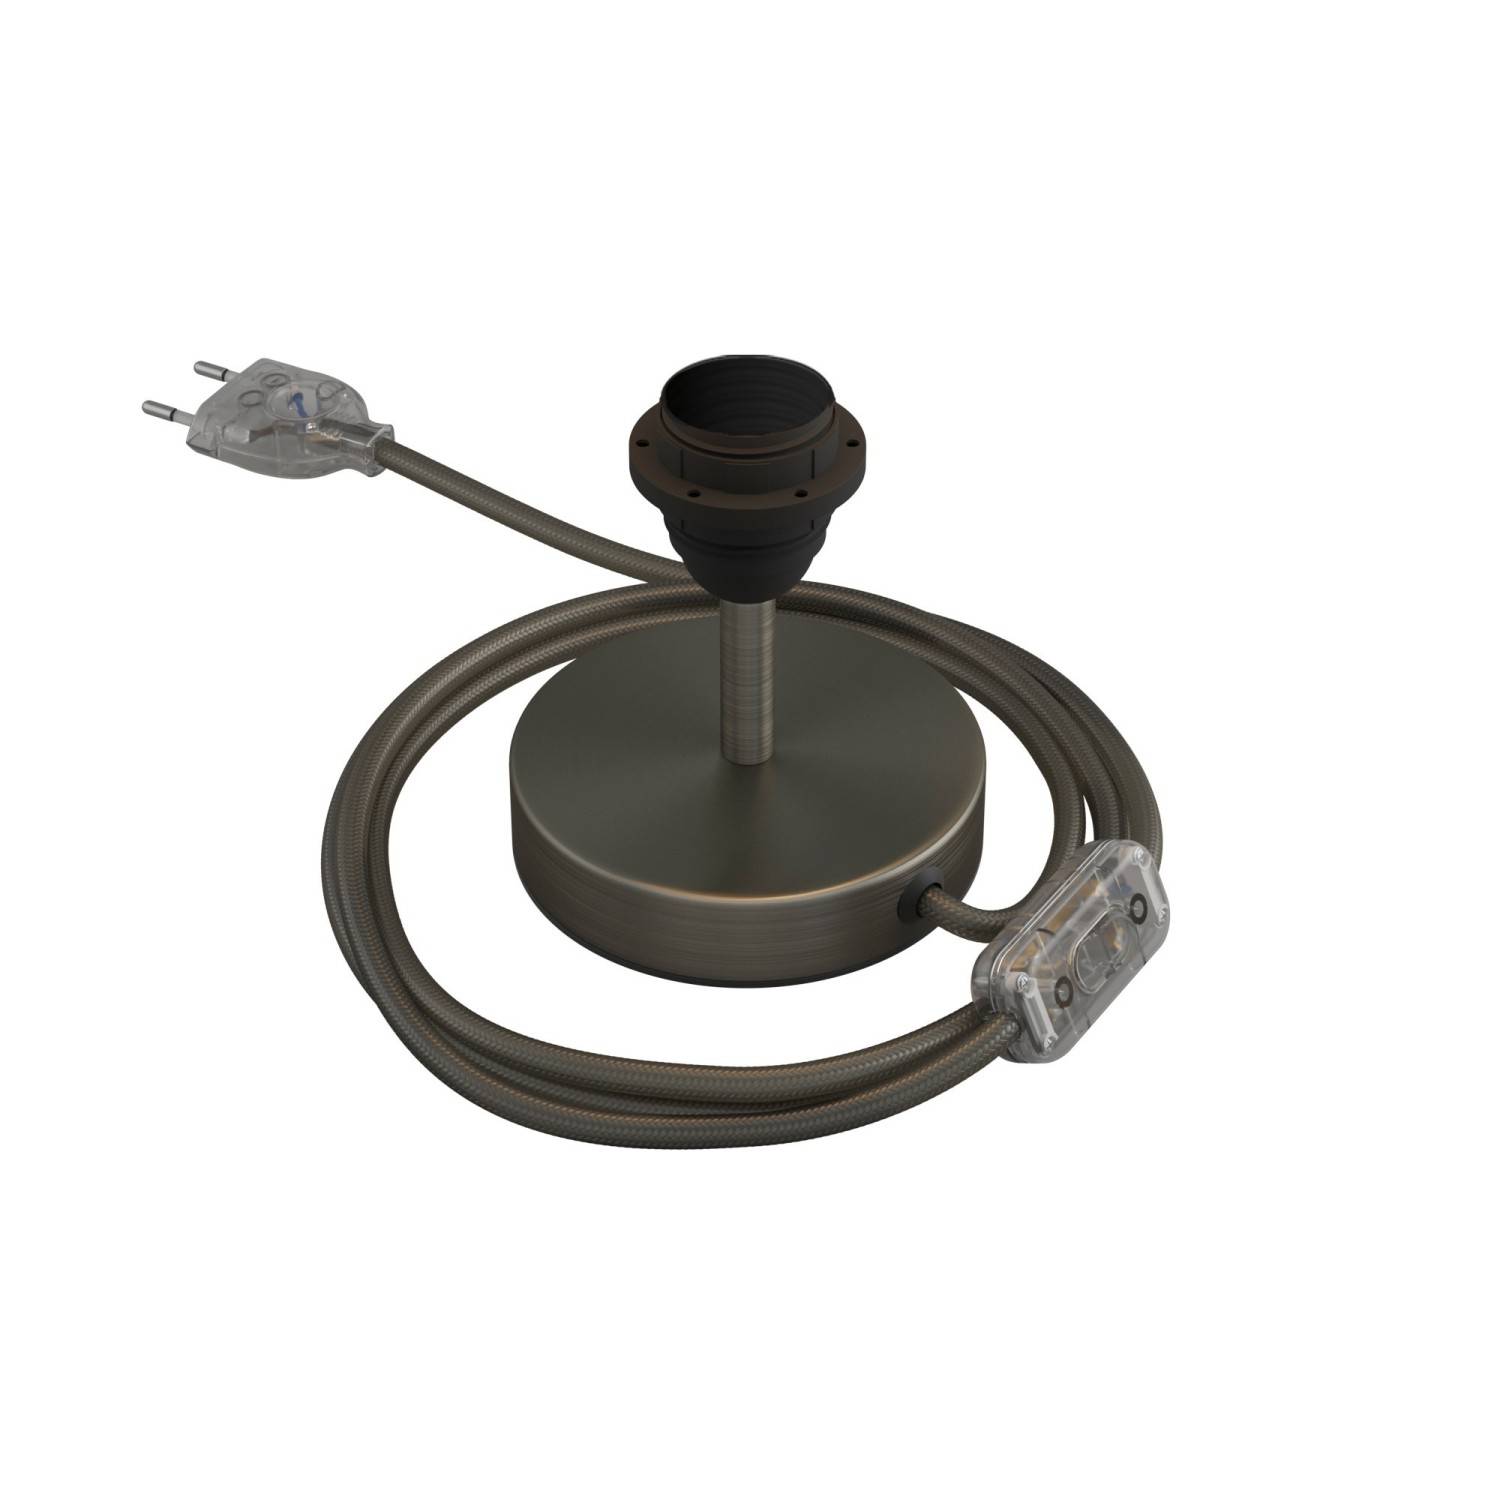 Alzaluce für Lampenschirm - Metall-Tischleuchte mit 2-poligem Stecker